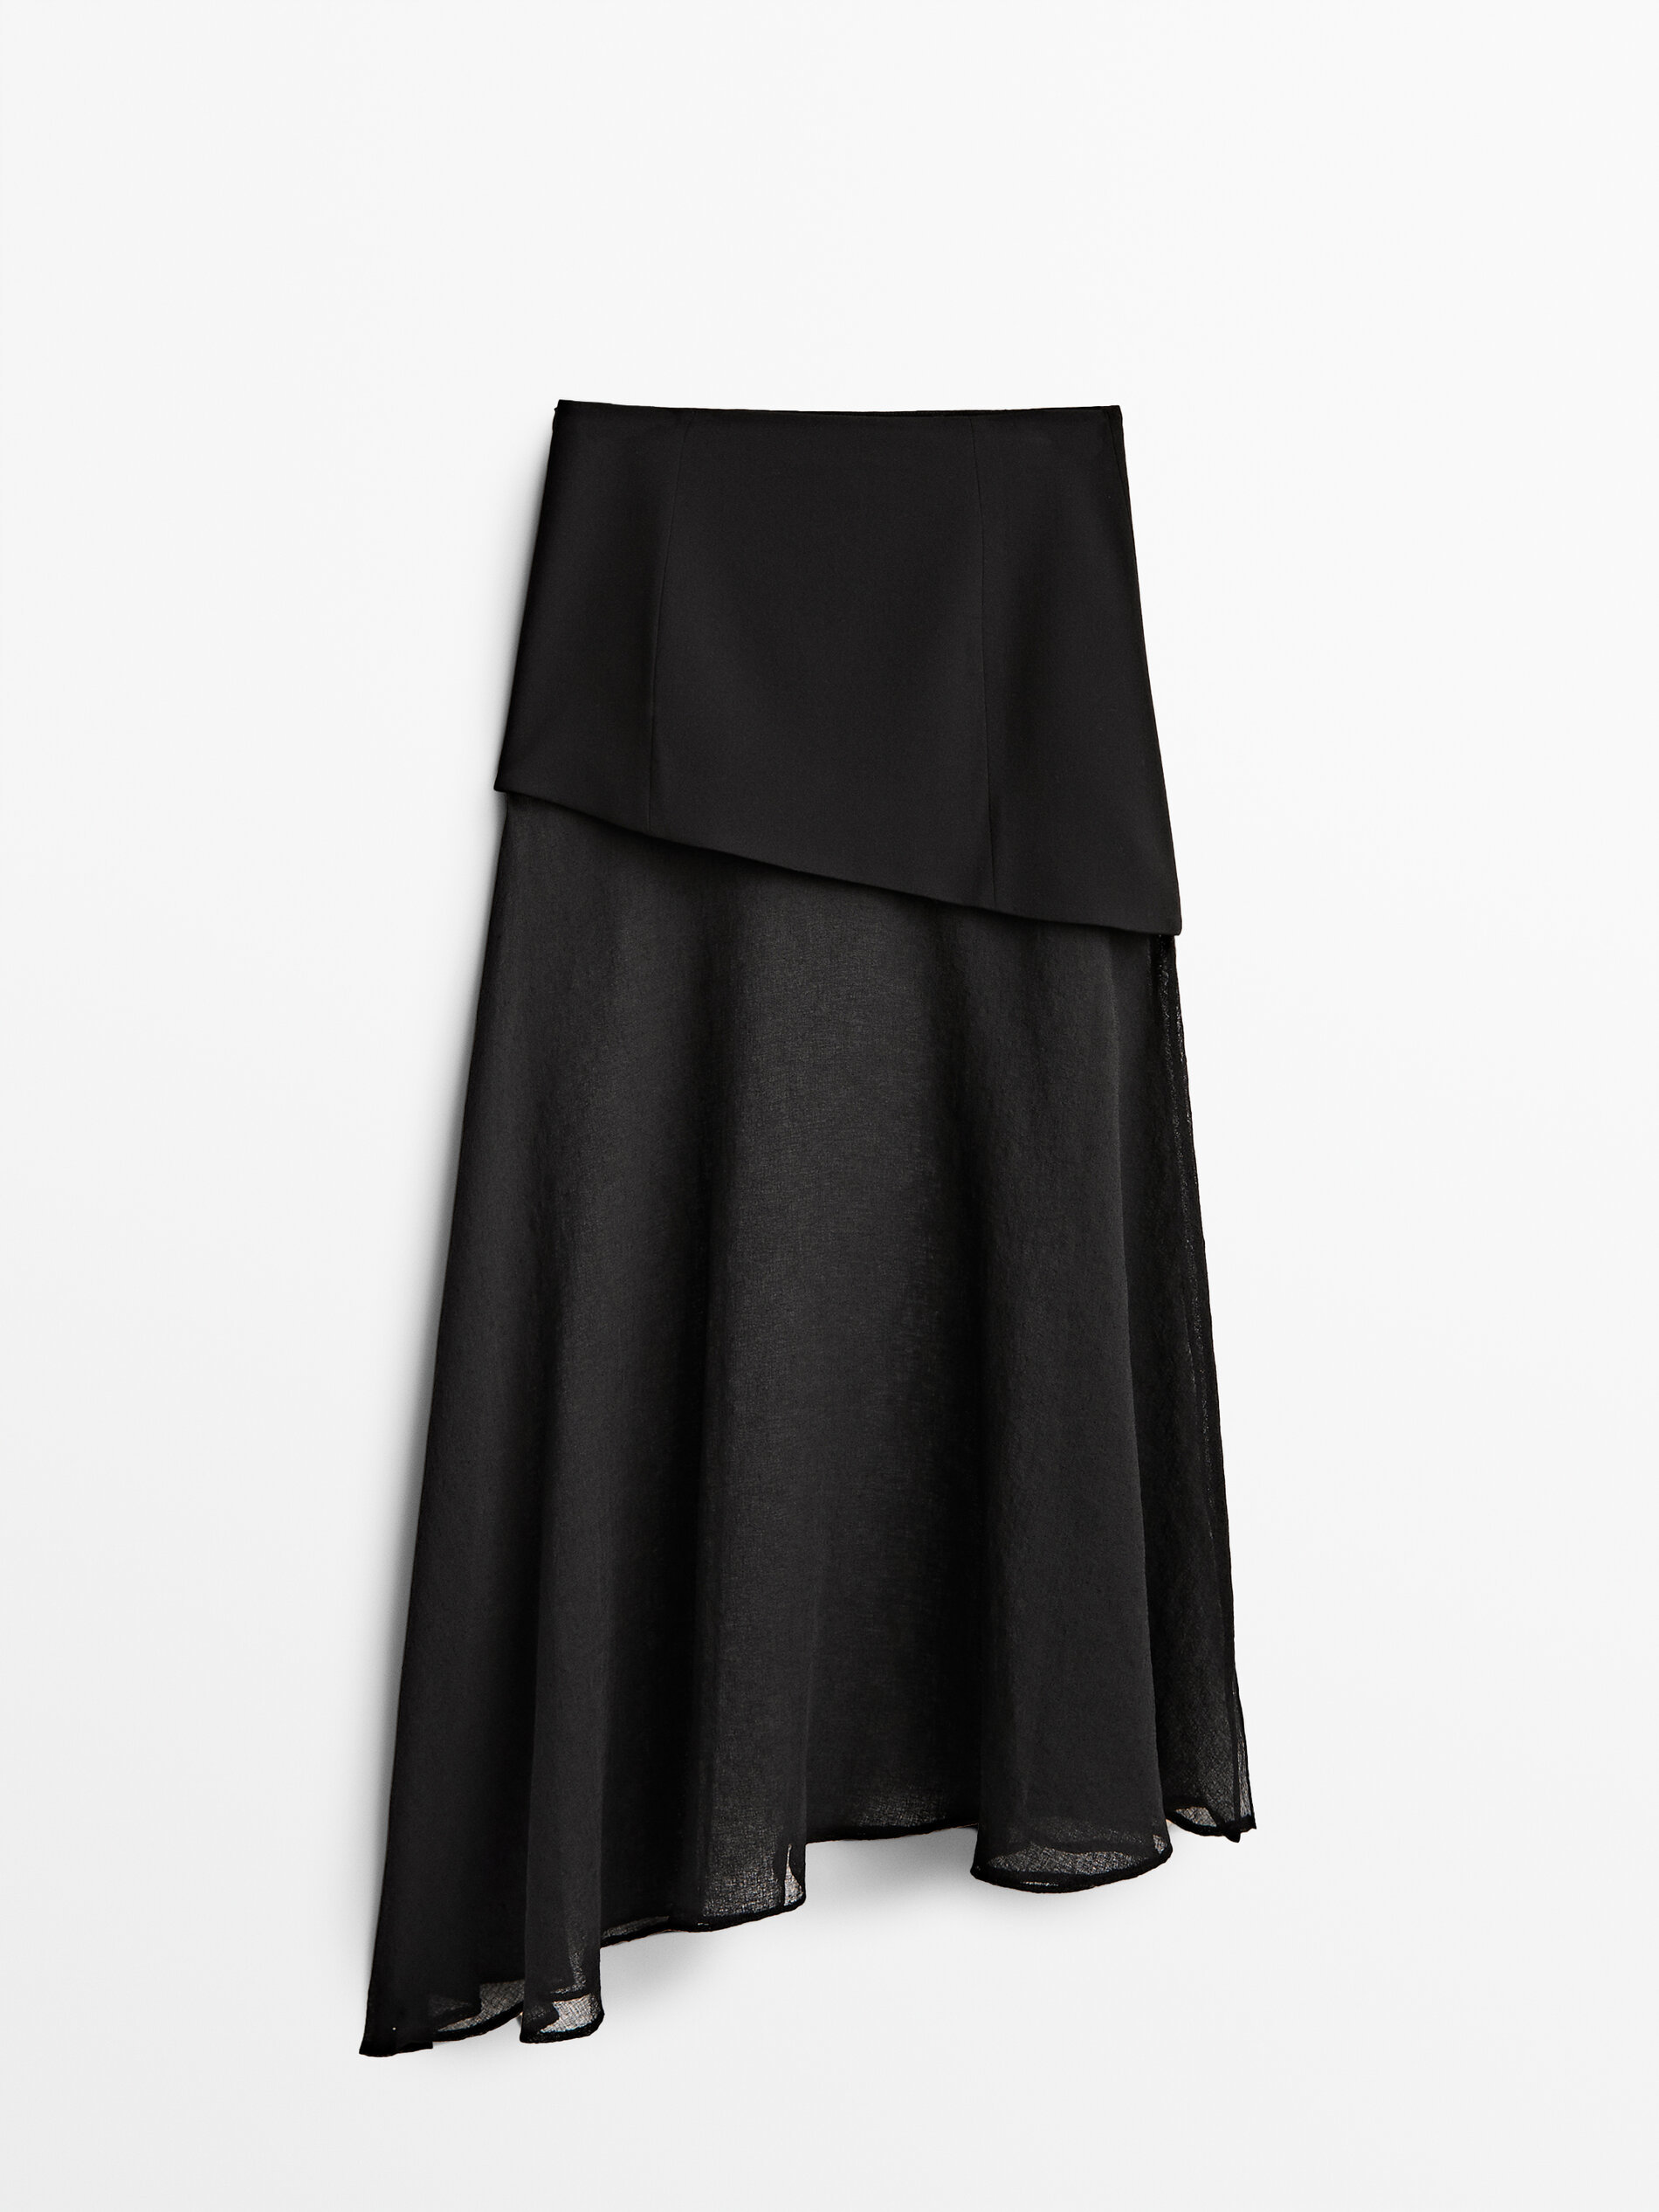 Falda negra asimétrica de Massimo Dutti (129 euros).